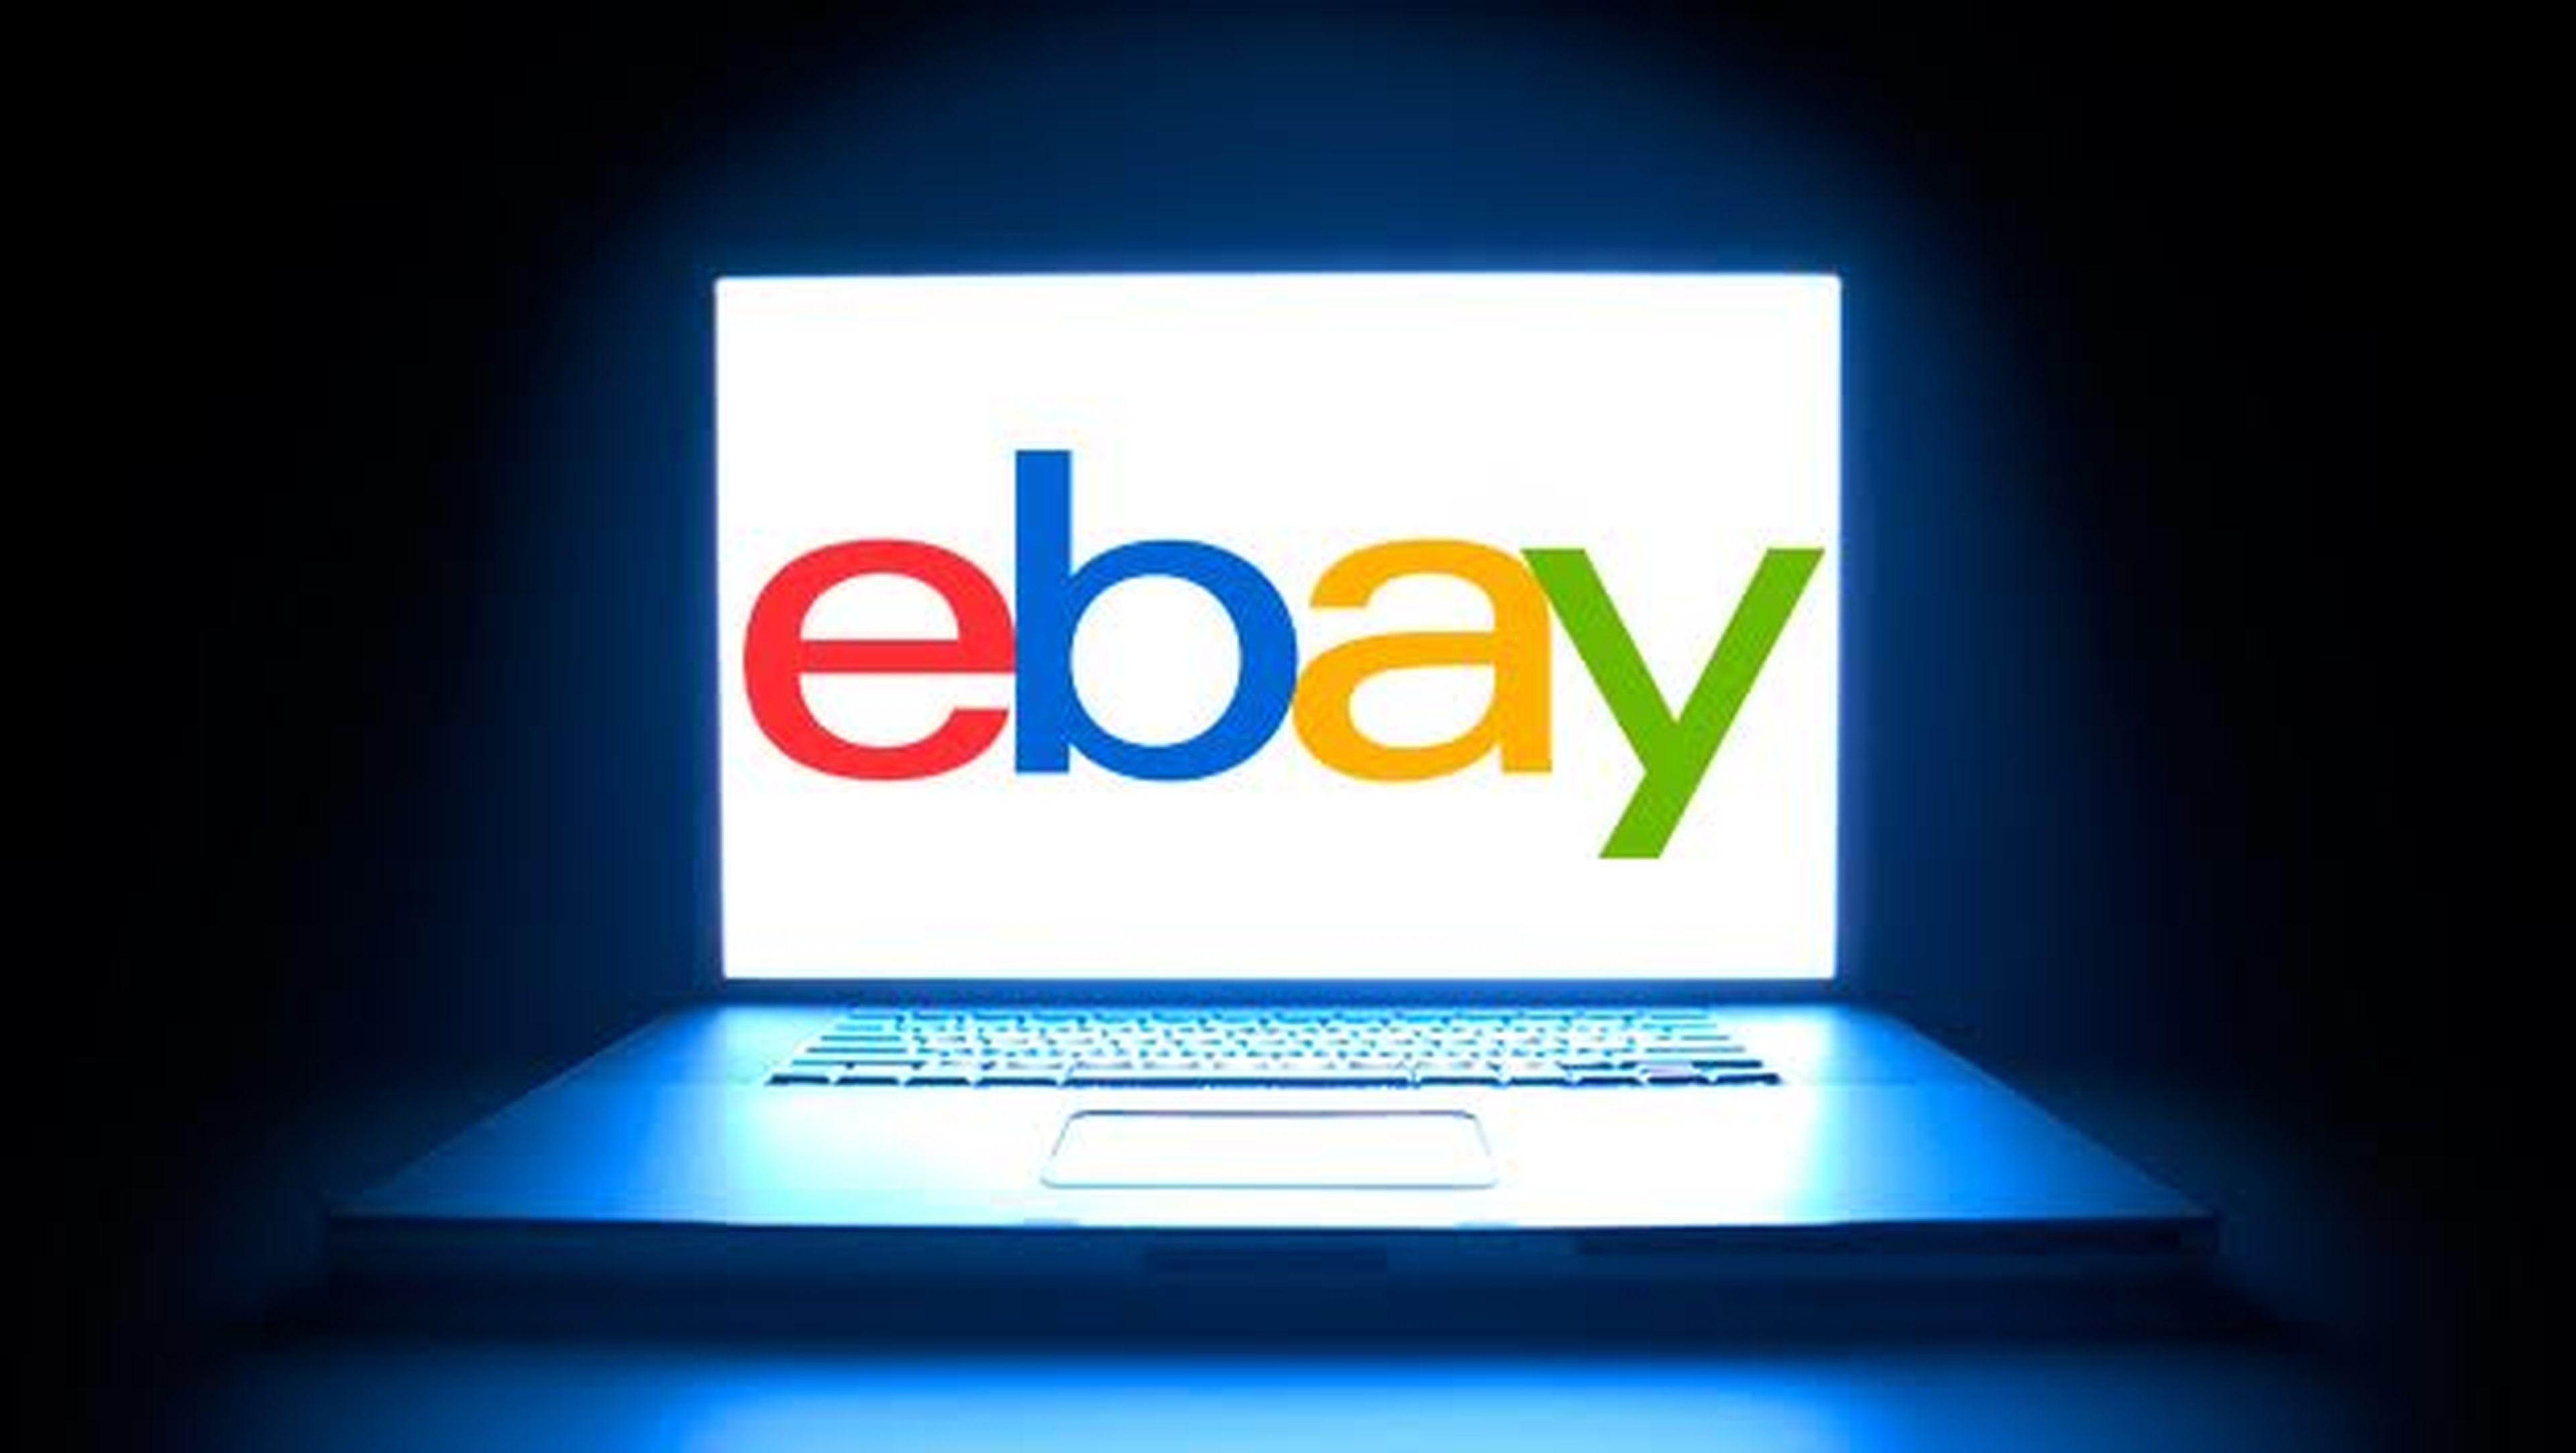 portátiles baratos en el super weekend de ebay